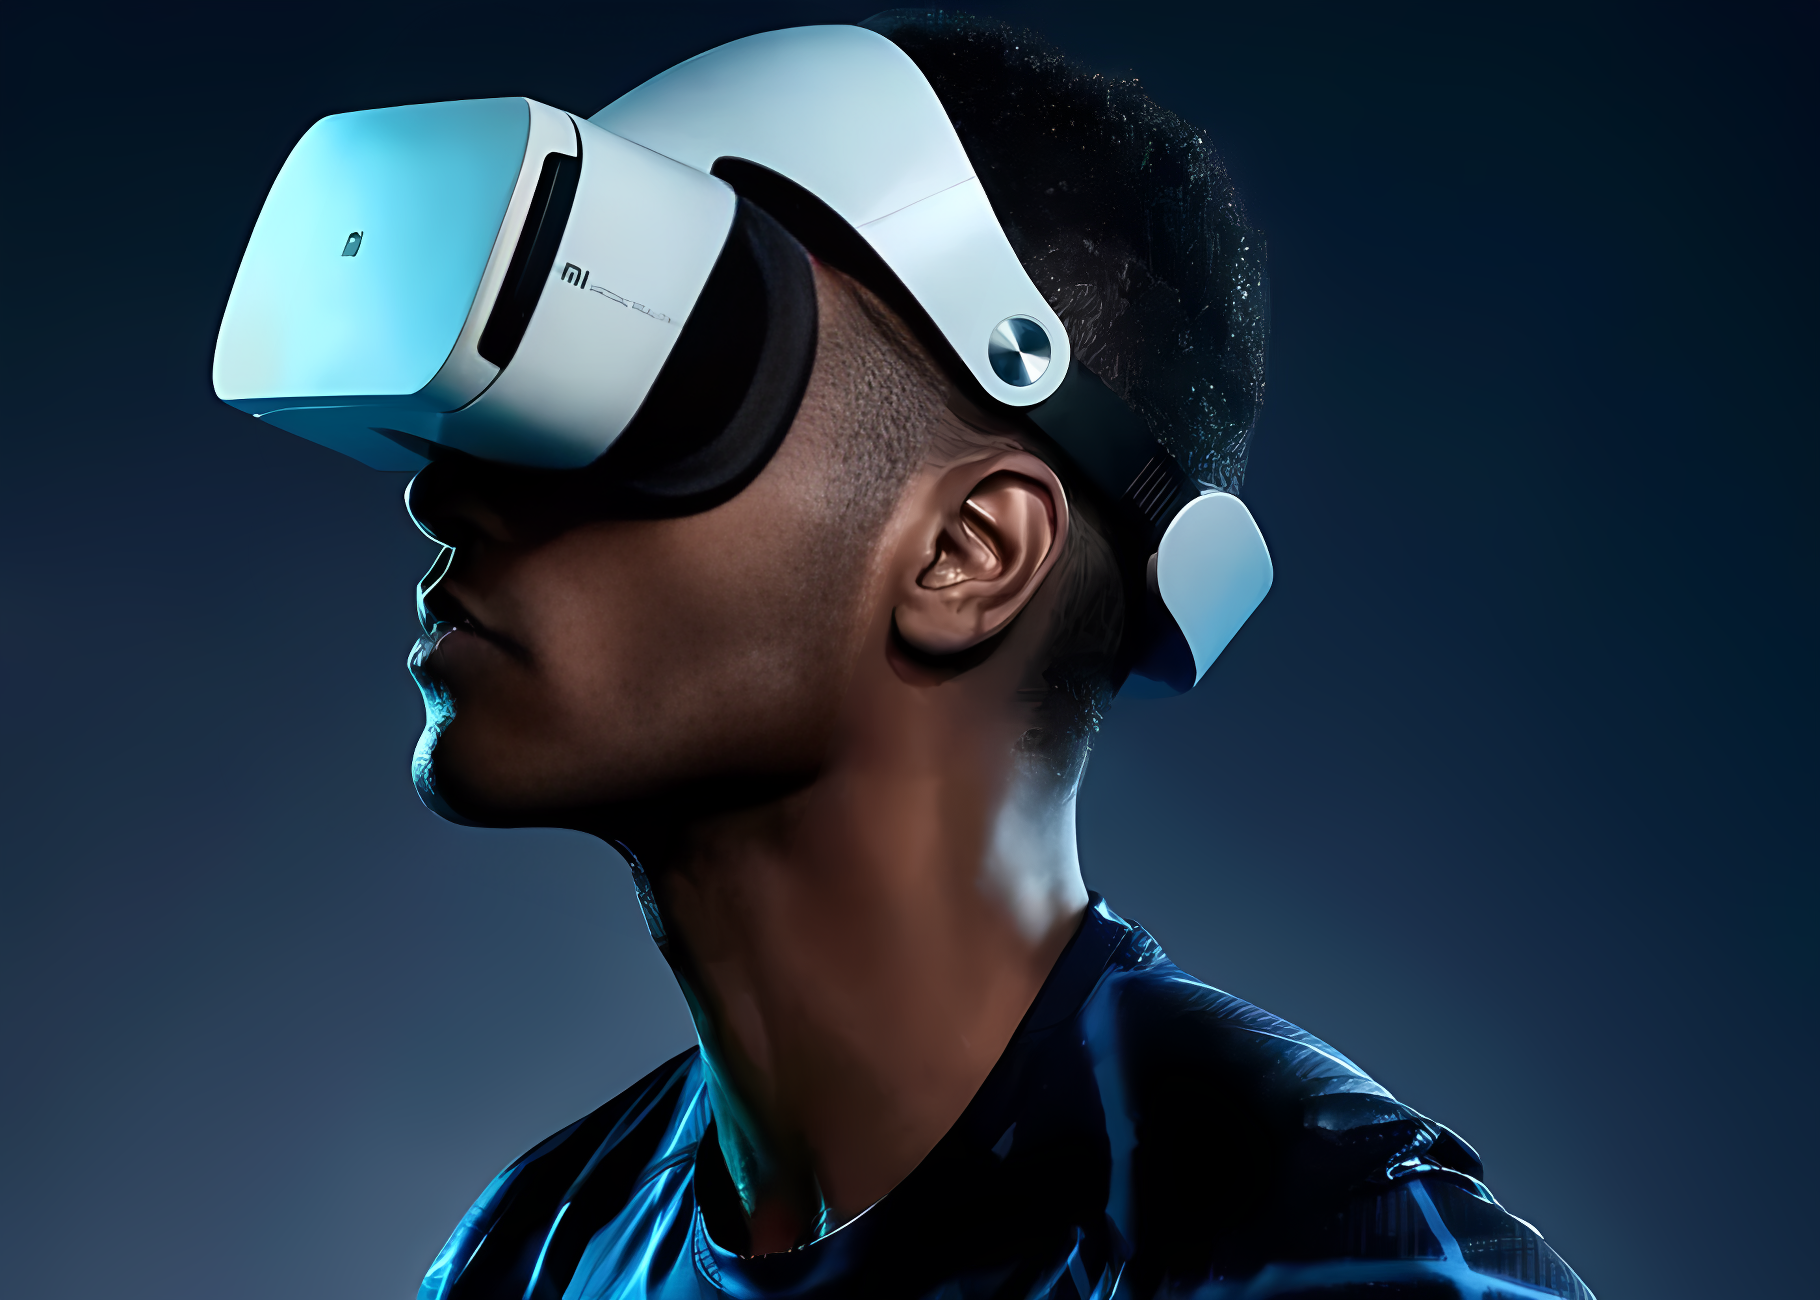 一位男士戴着虚拟现实头盔，侧脸朝向右侧，背景显得有些昏暗，整体氛围科技感十足。